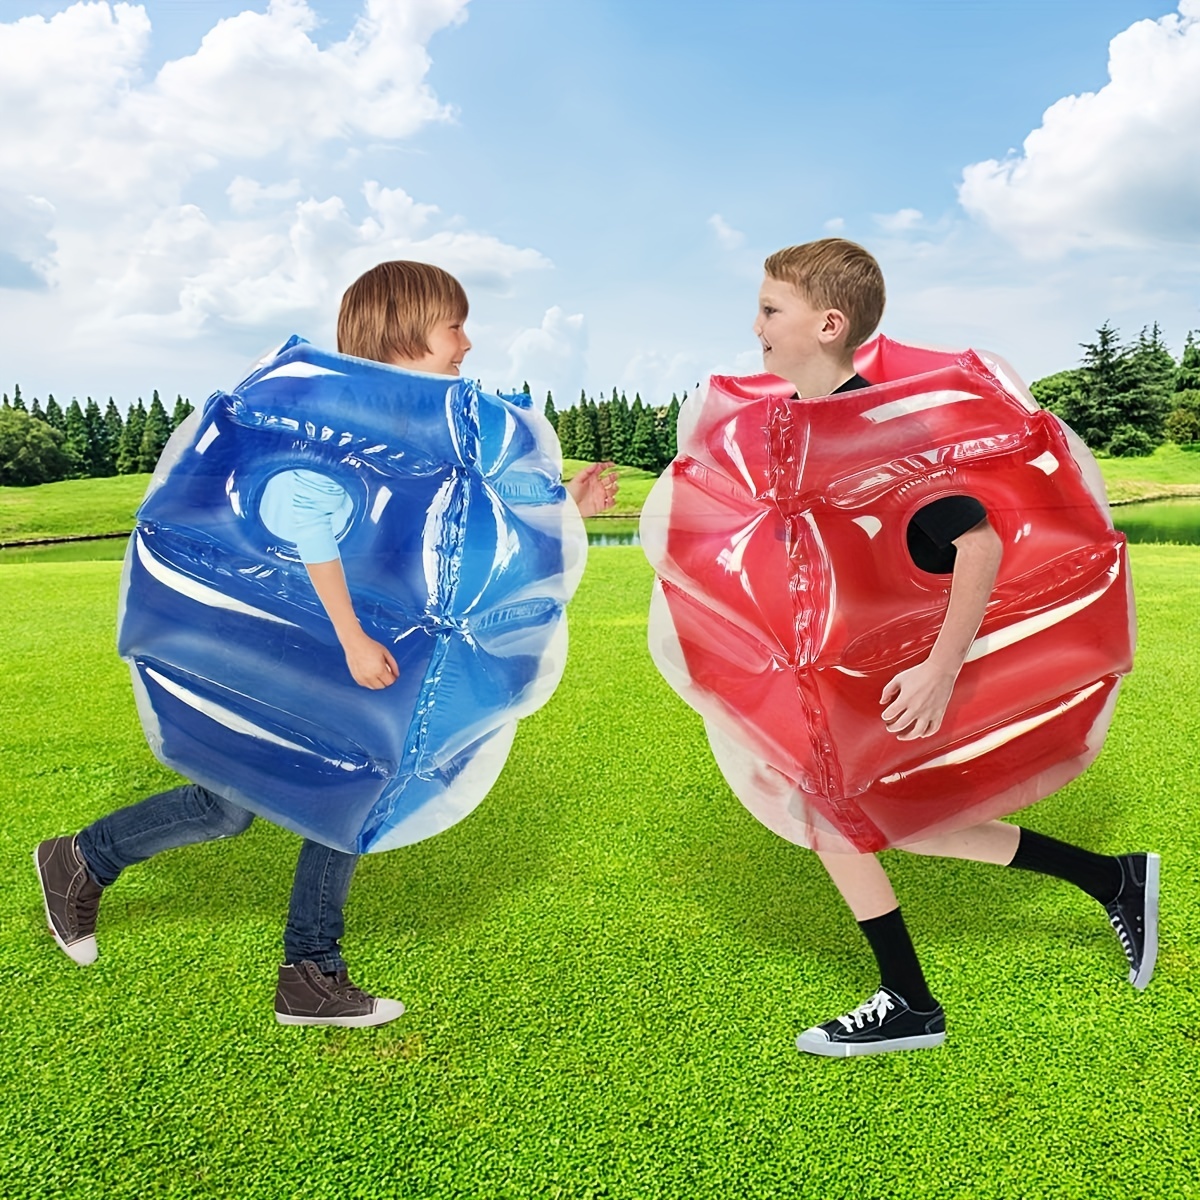 Los niños juegan y rebote en zorb, inflateable bolas gigantes en